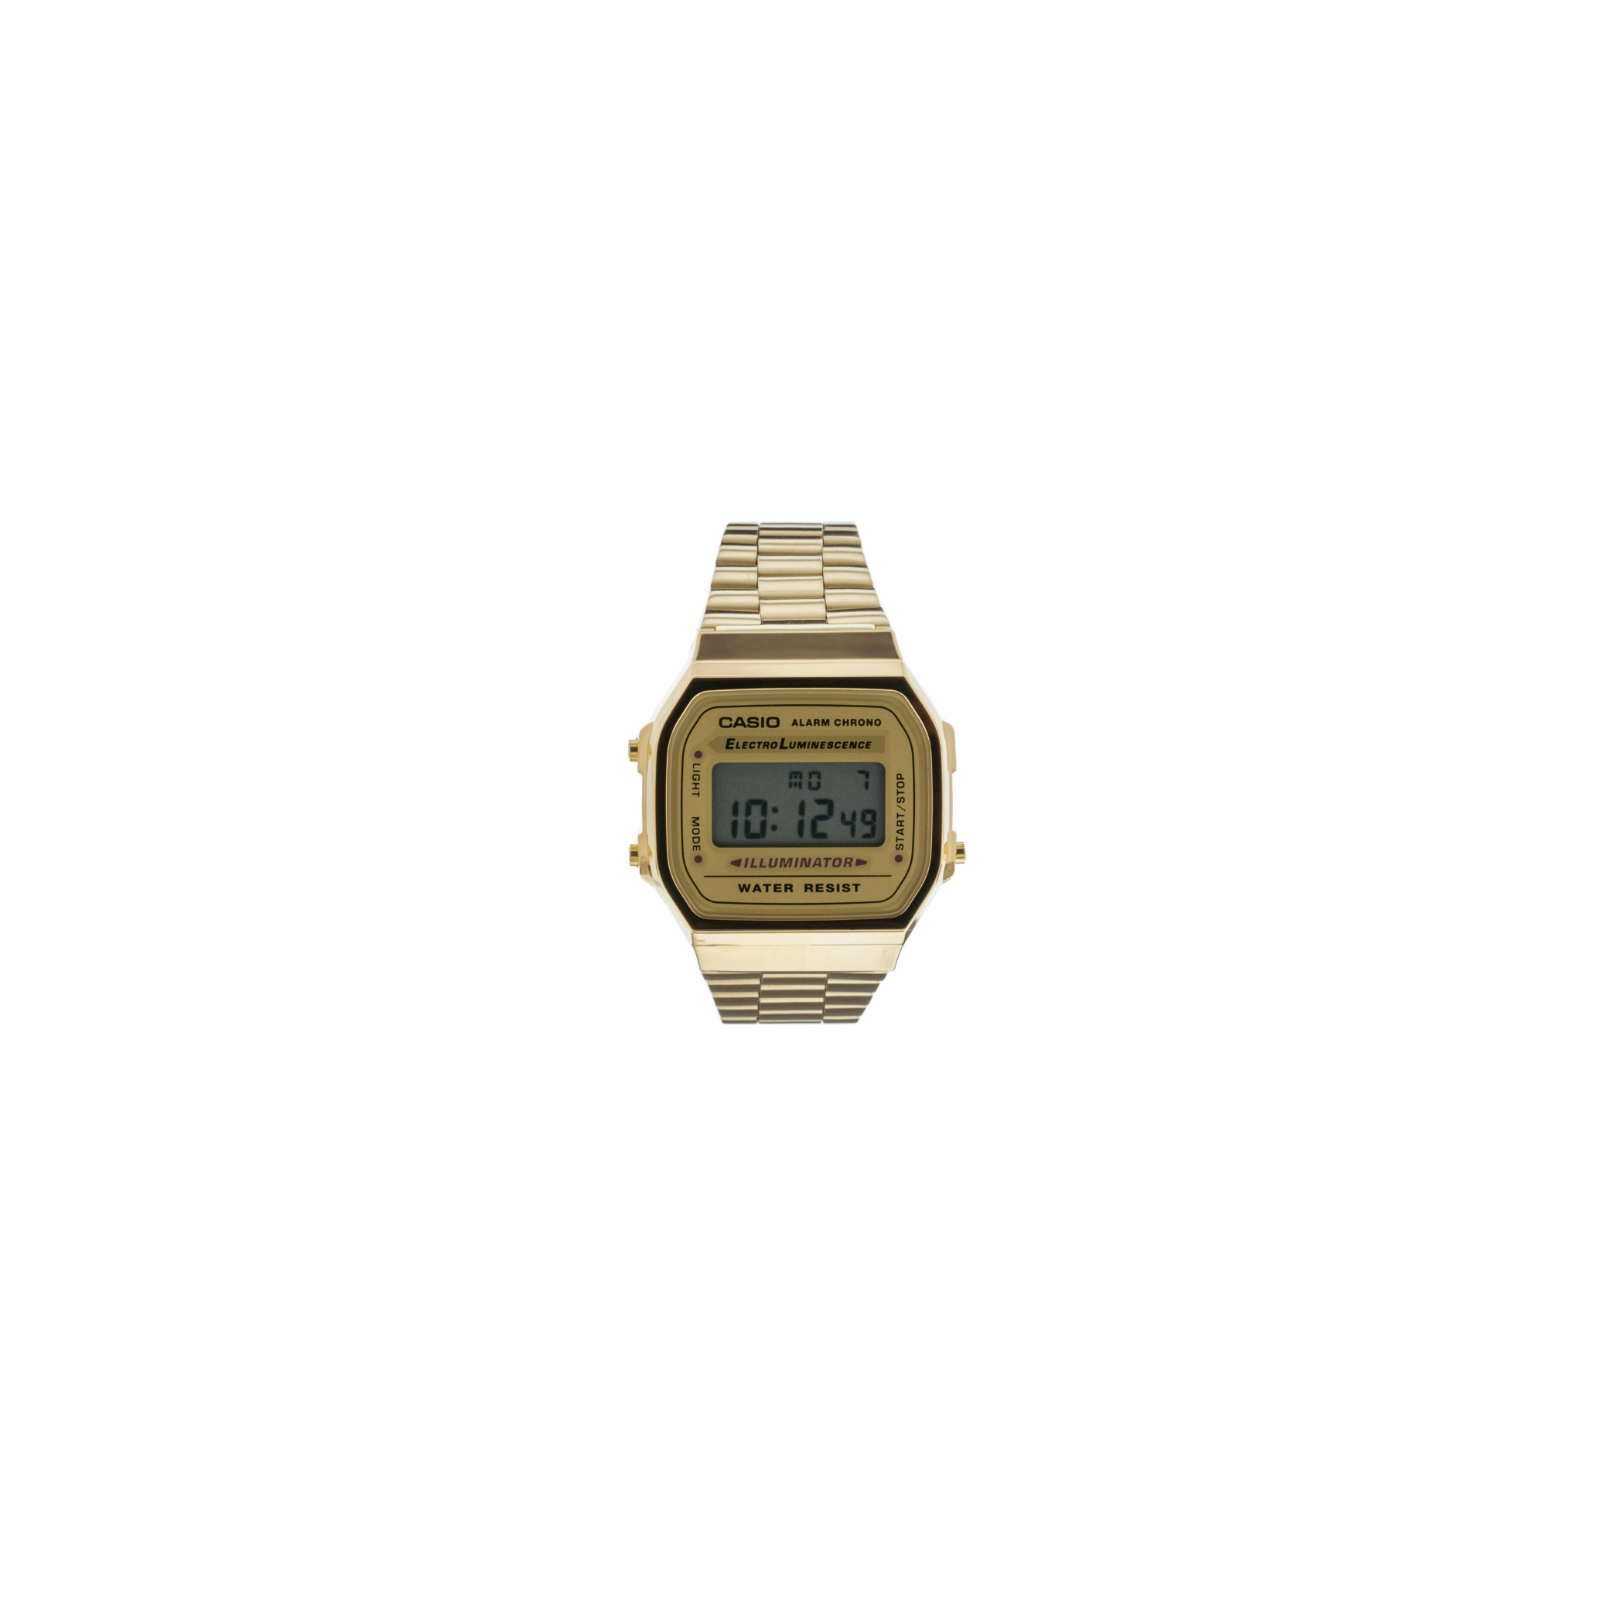 Casio dorado: el retro más brillante que nunca - Comprar relojes